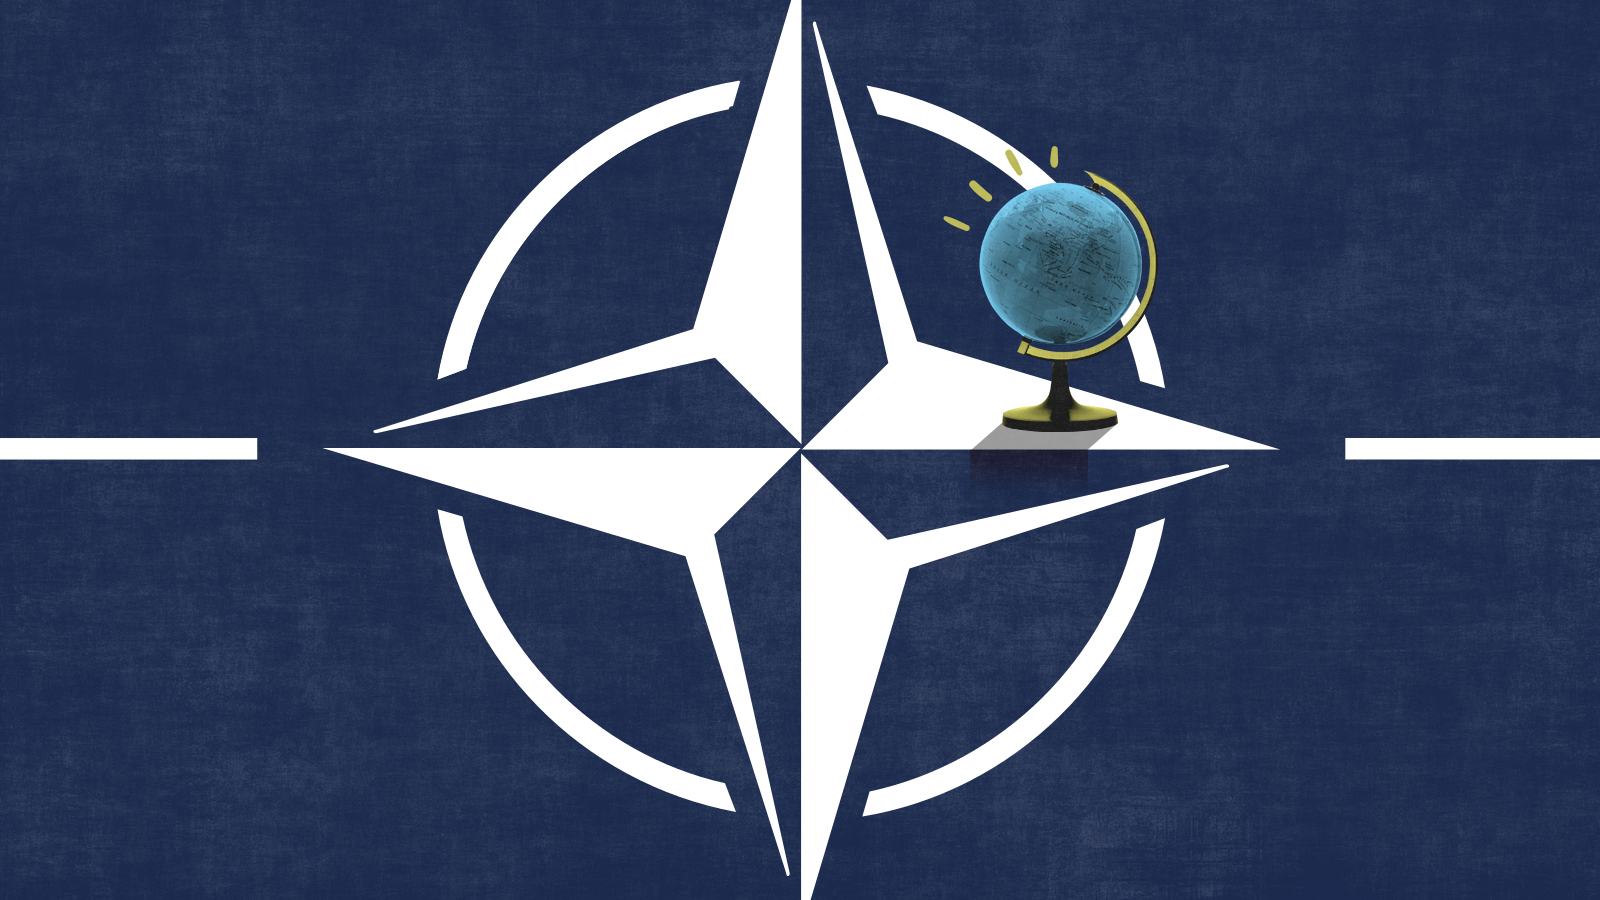 The NATO symbol.